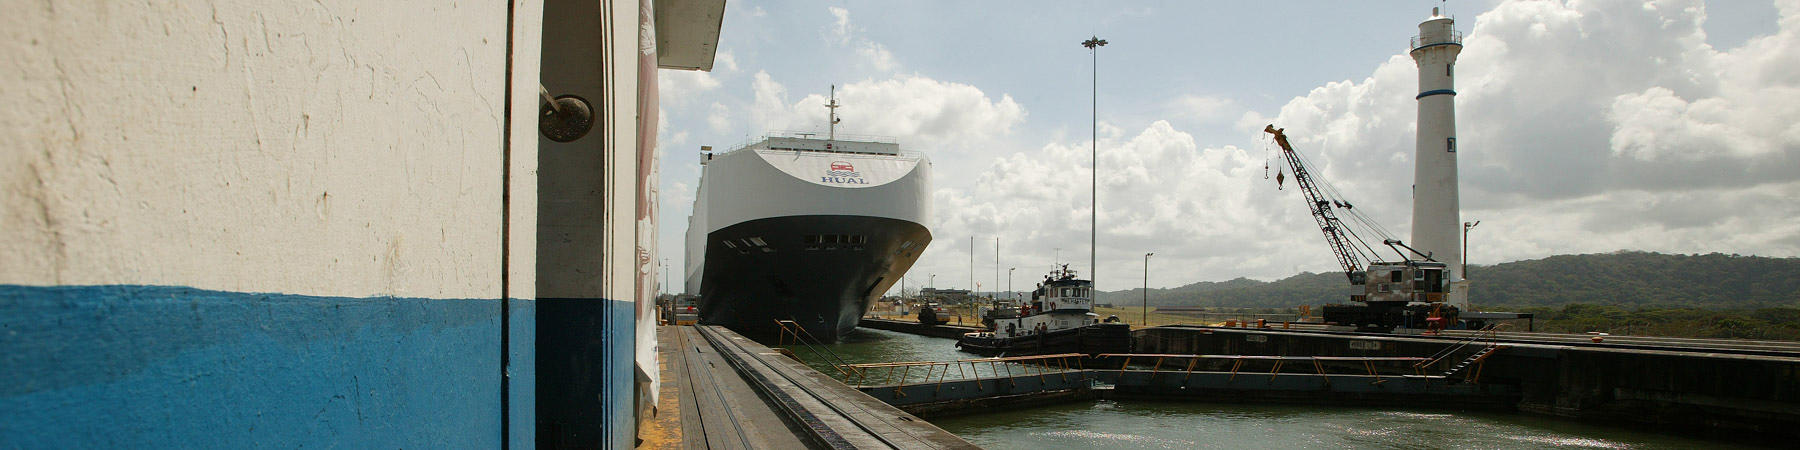 Le canal de Panama - Photo Pêcheur d'Images